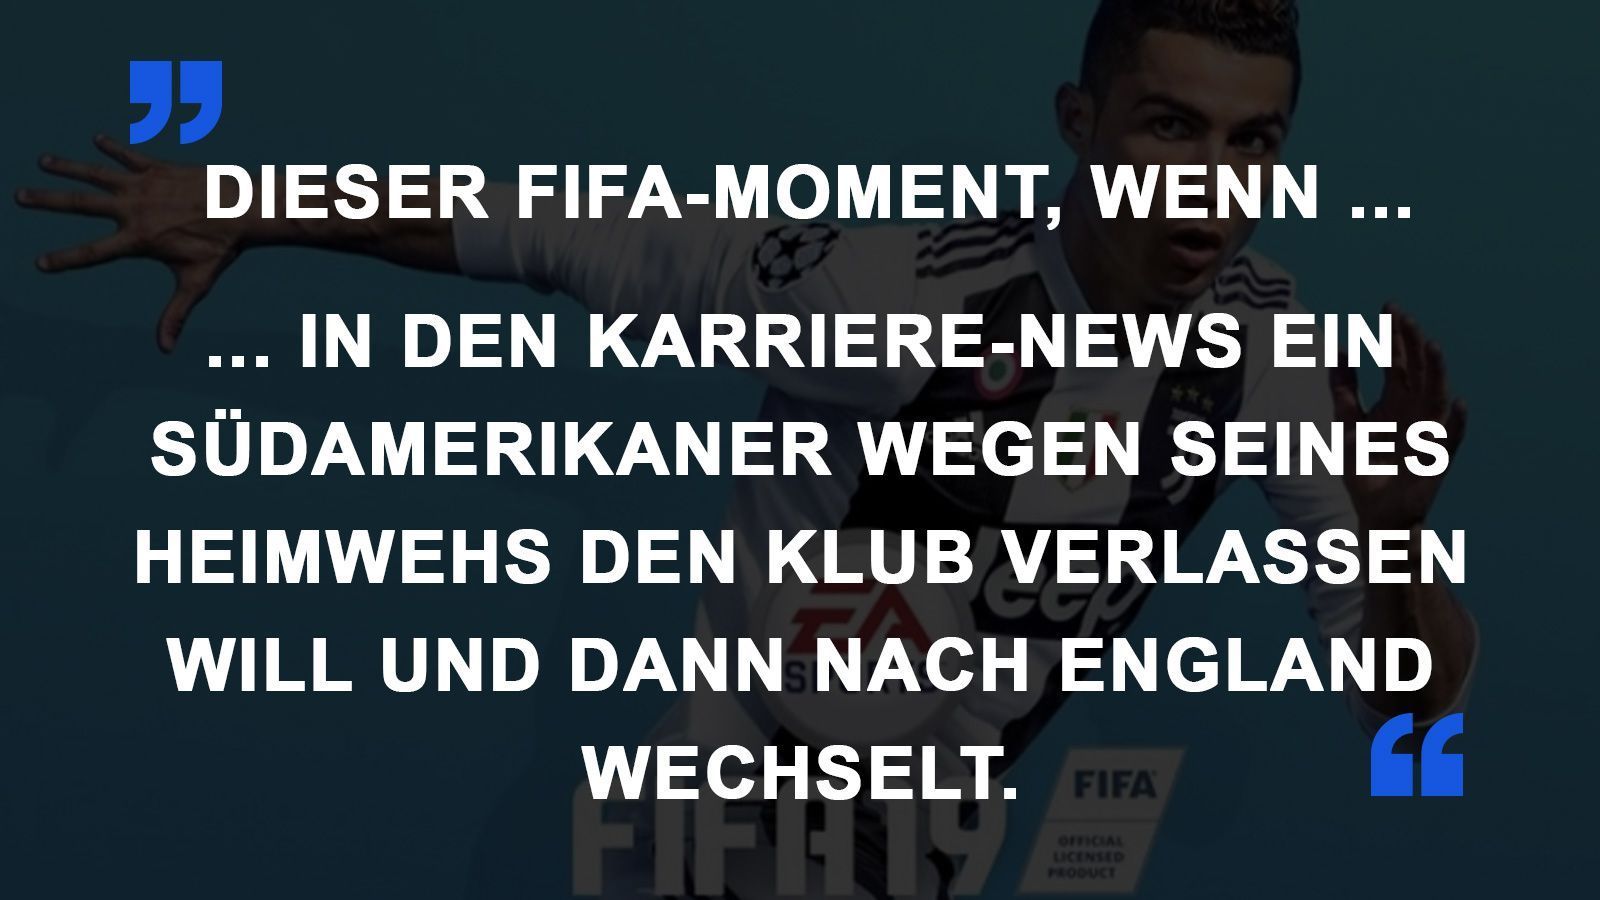 
                <strong>FIFA Momente Transfer</strong><br>
                
              